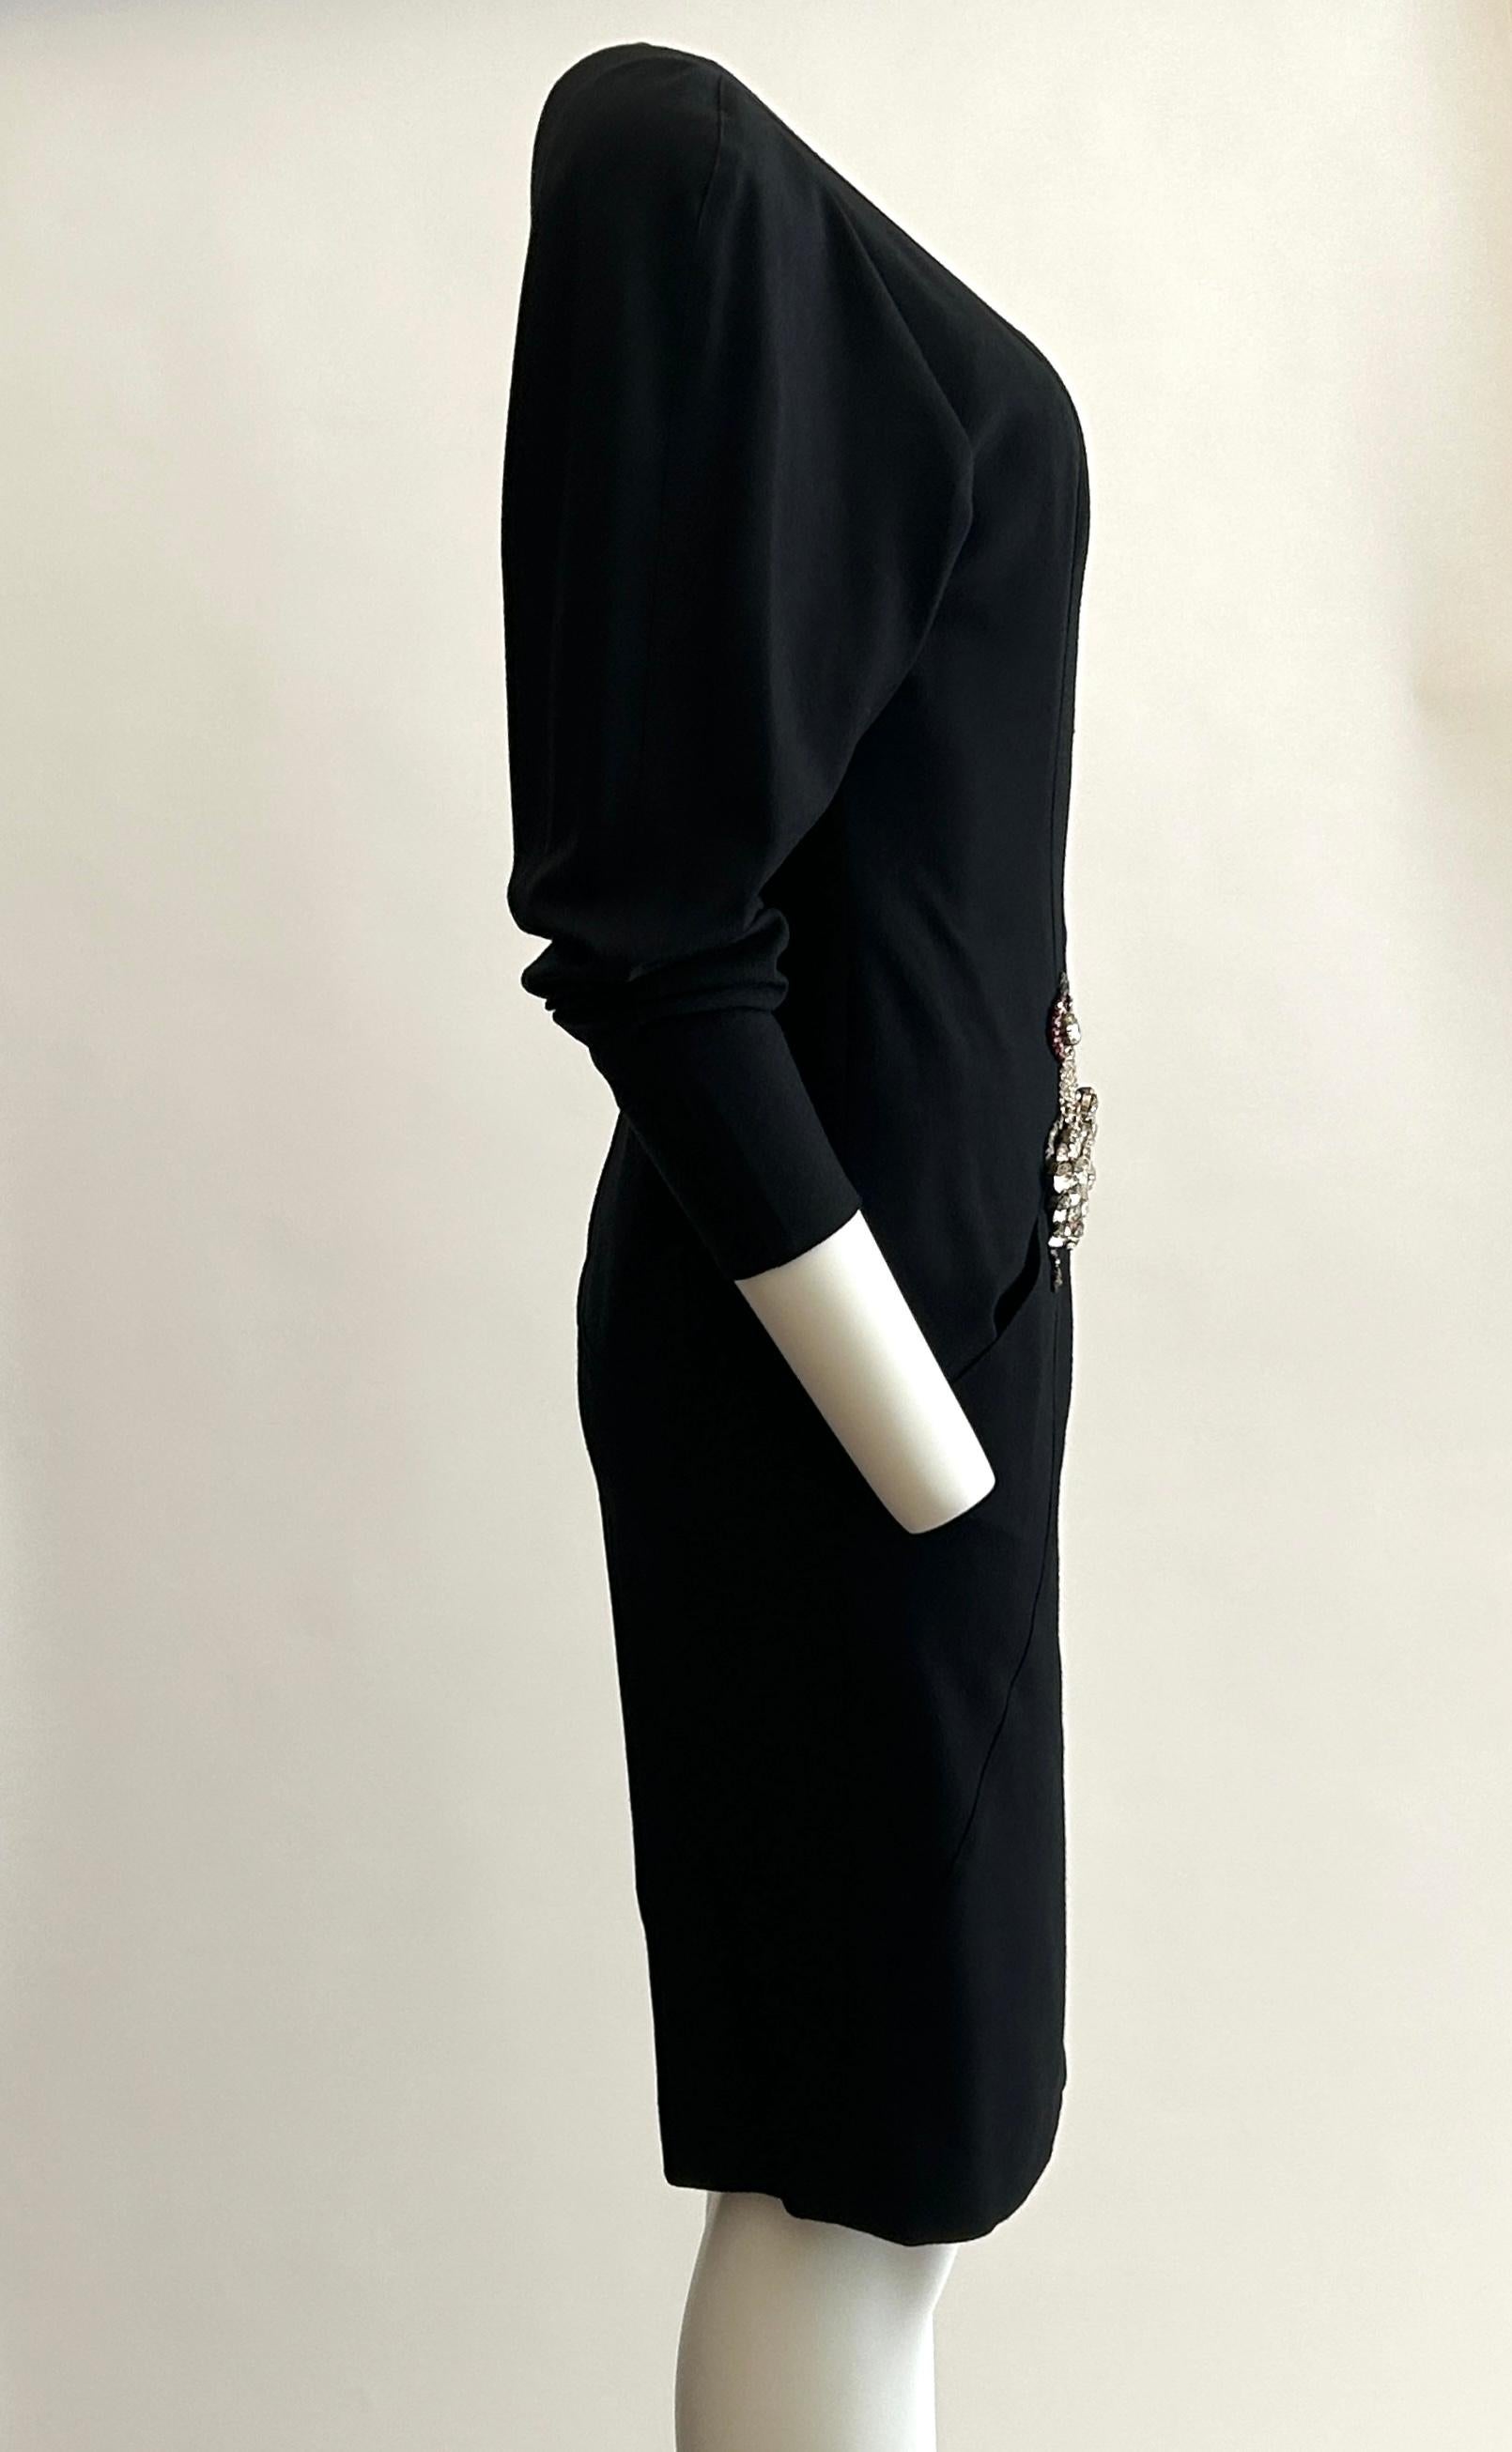 Karl Lagerfeld Vintage 1980s Ballerina Dancer Embellished Black Dress  In Good Condition For Sale In San Francisco, CA